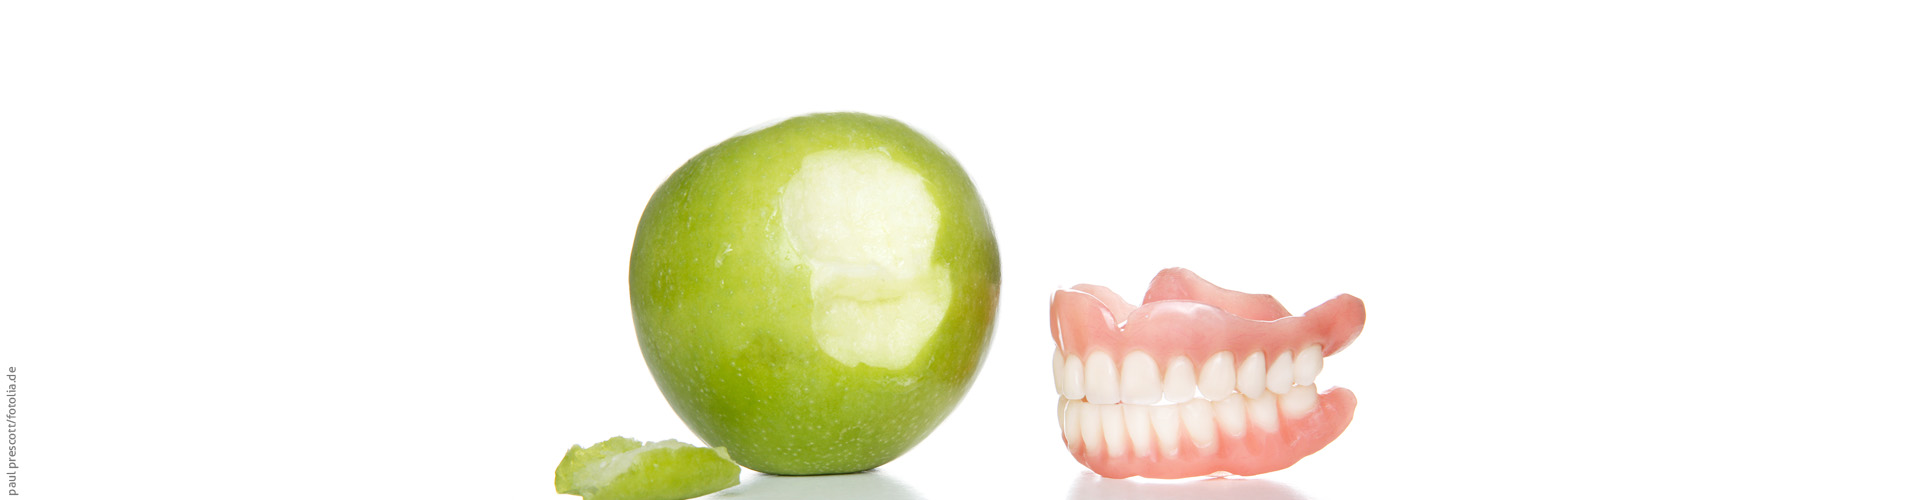 Zahnfehlstellungen - eine bersicht